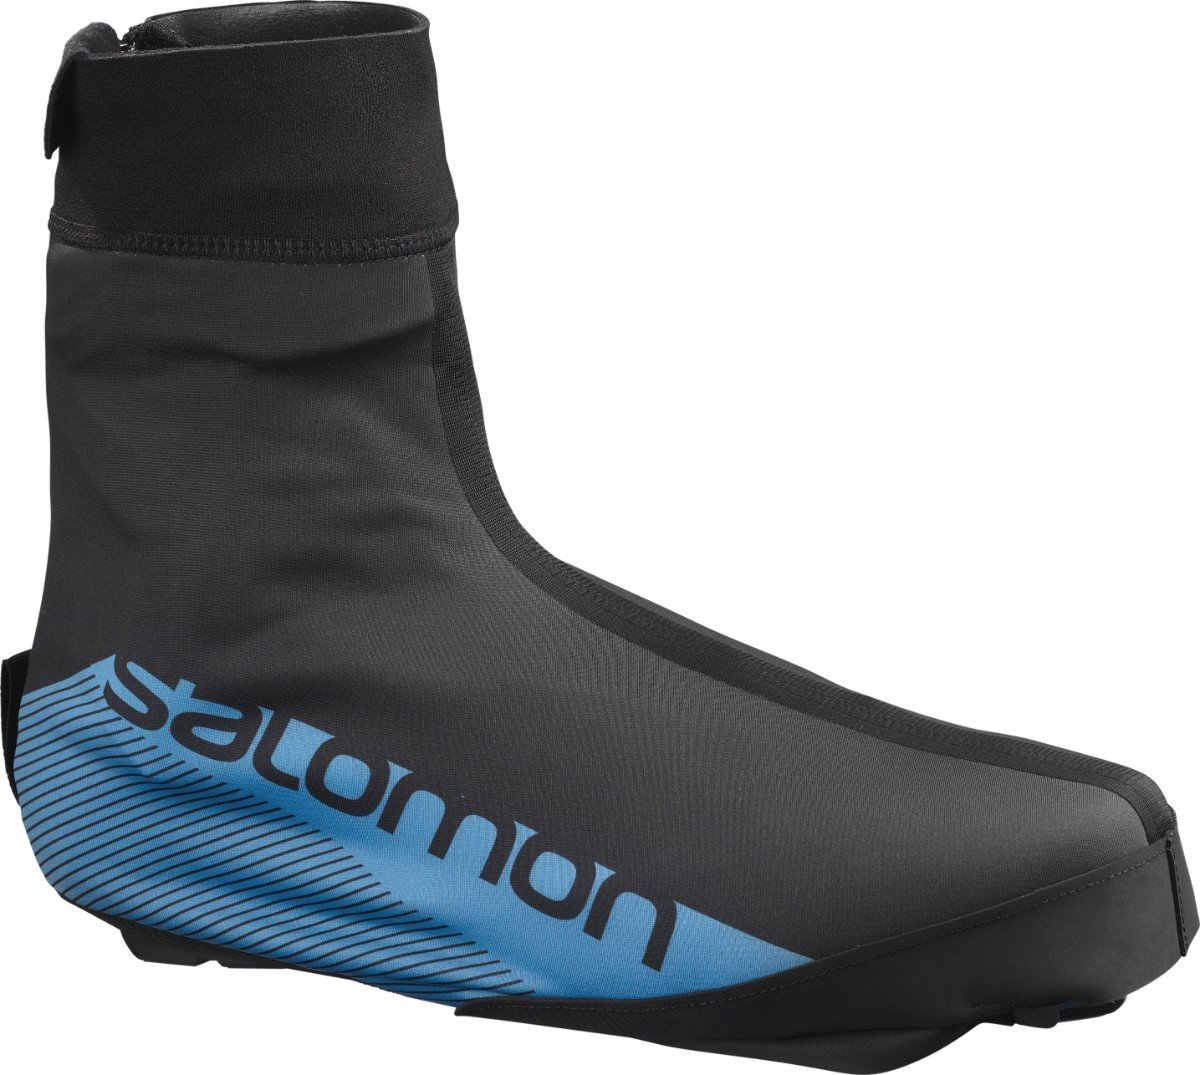 Návleky na topánky Salomon OVERBOOT PROLINK - čierne/modré